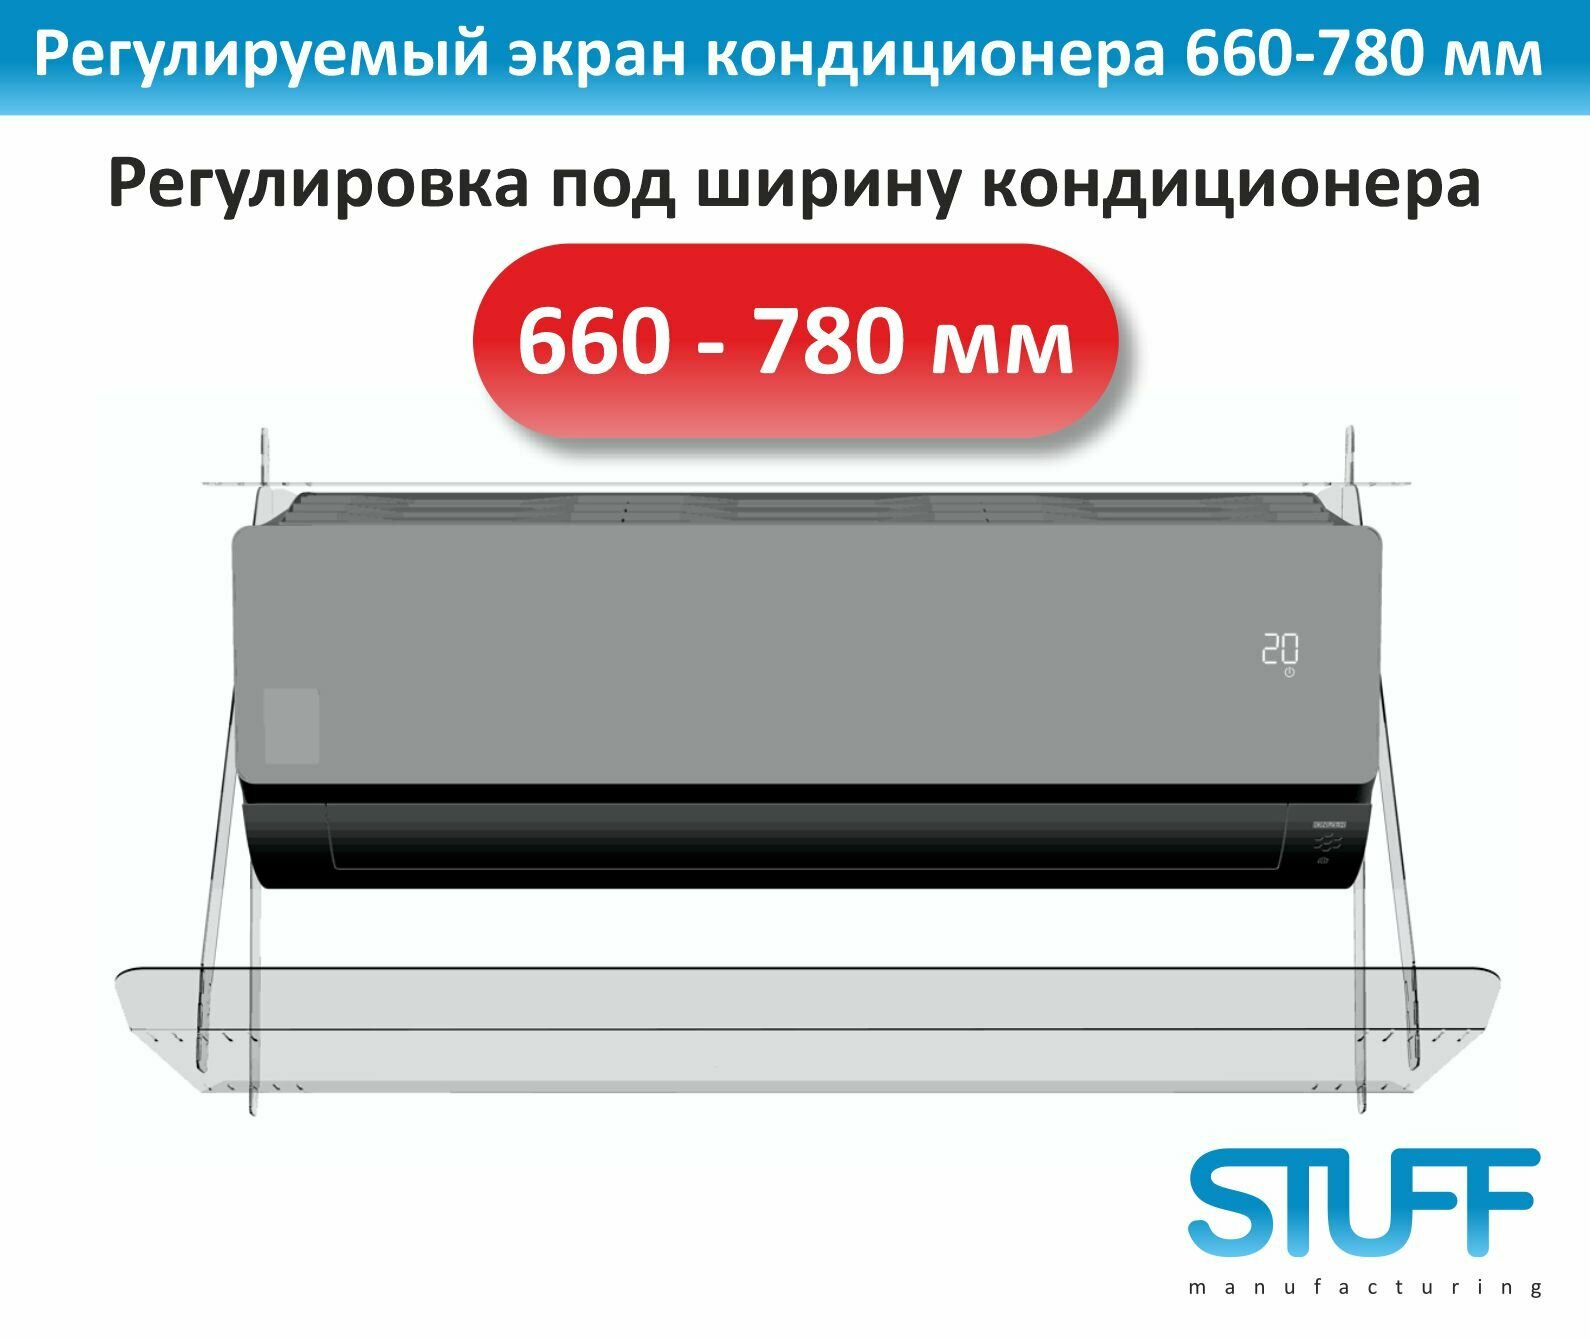 Экран кондиционера 660-780 регулируемый